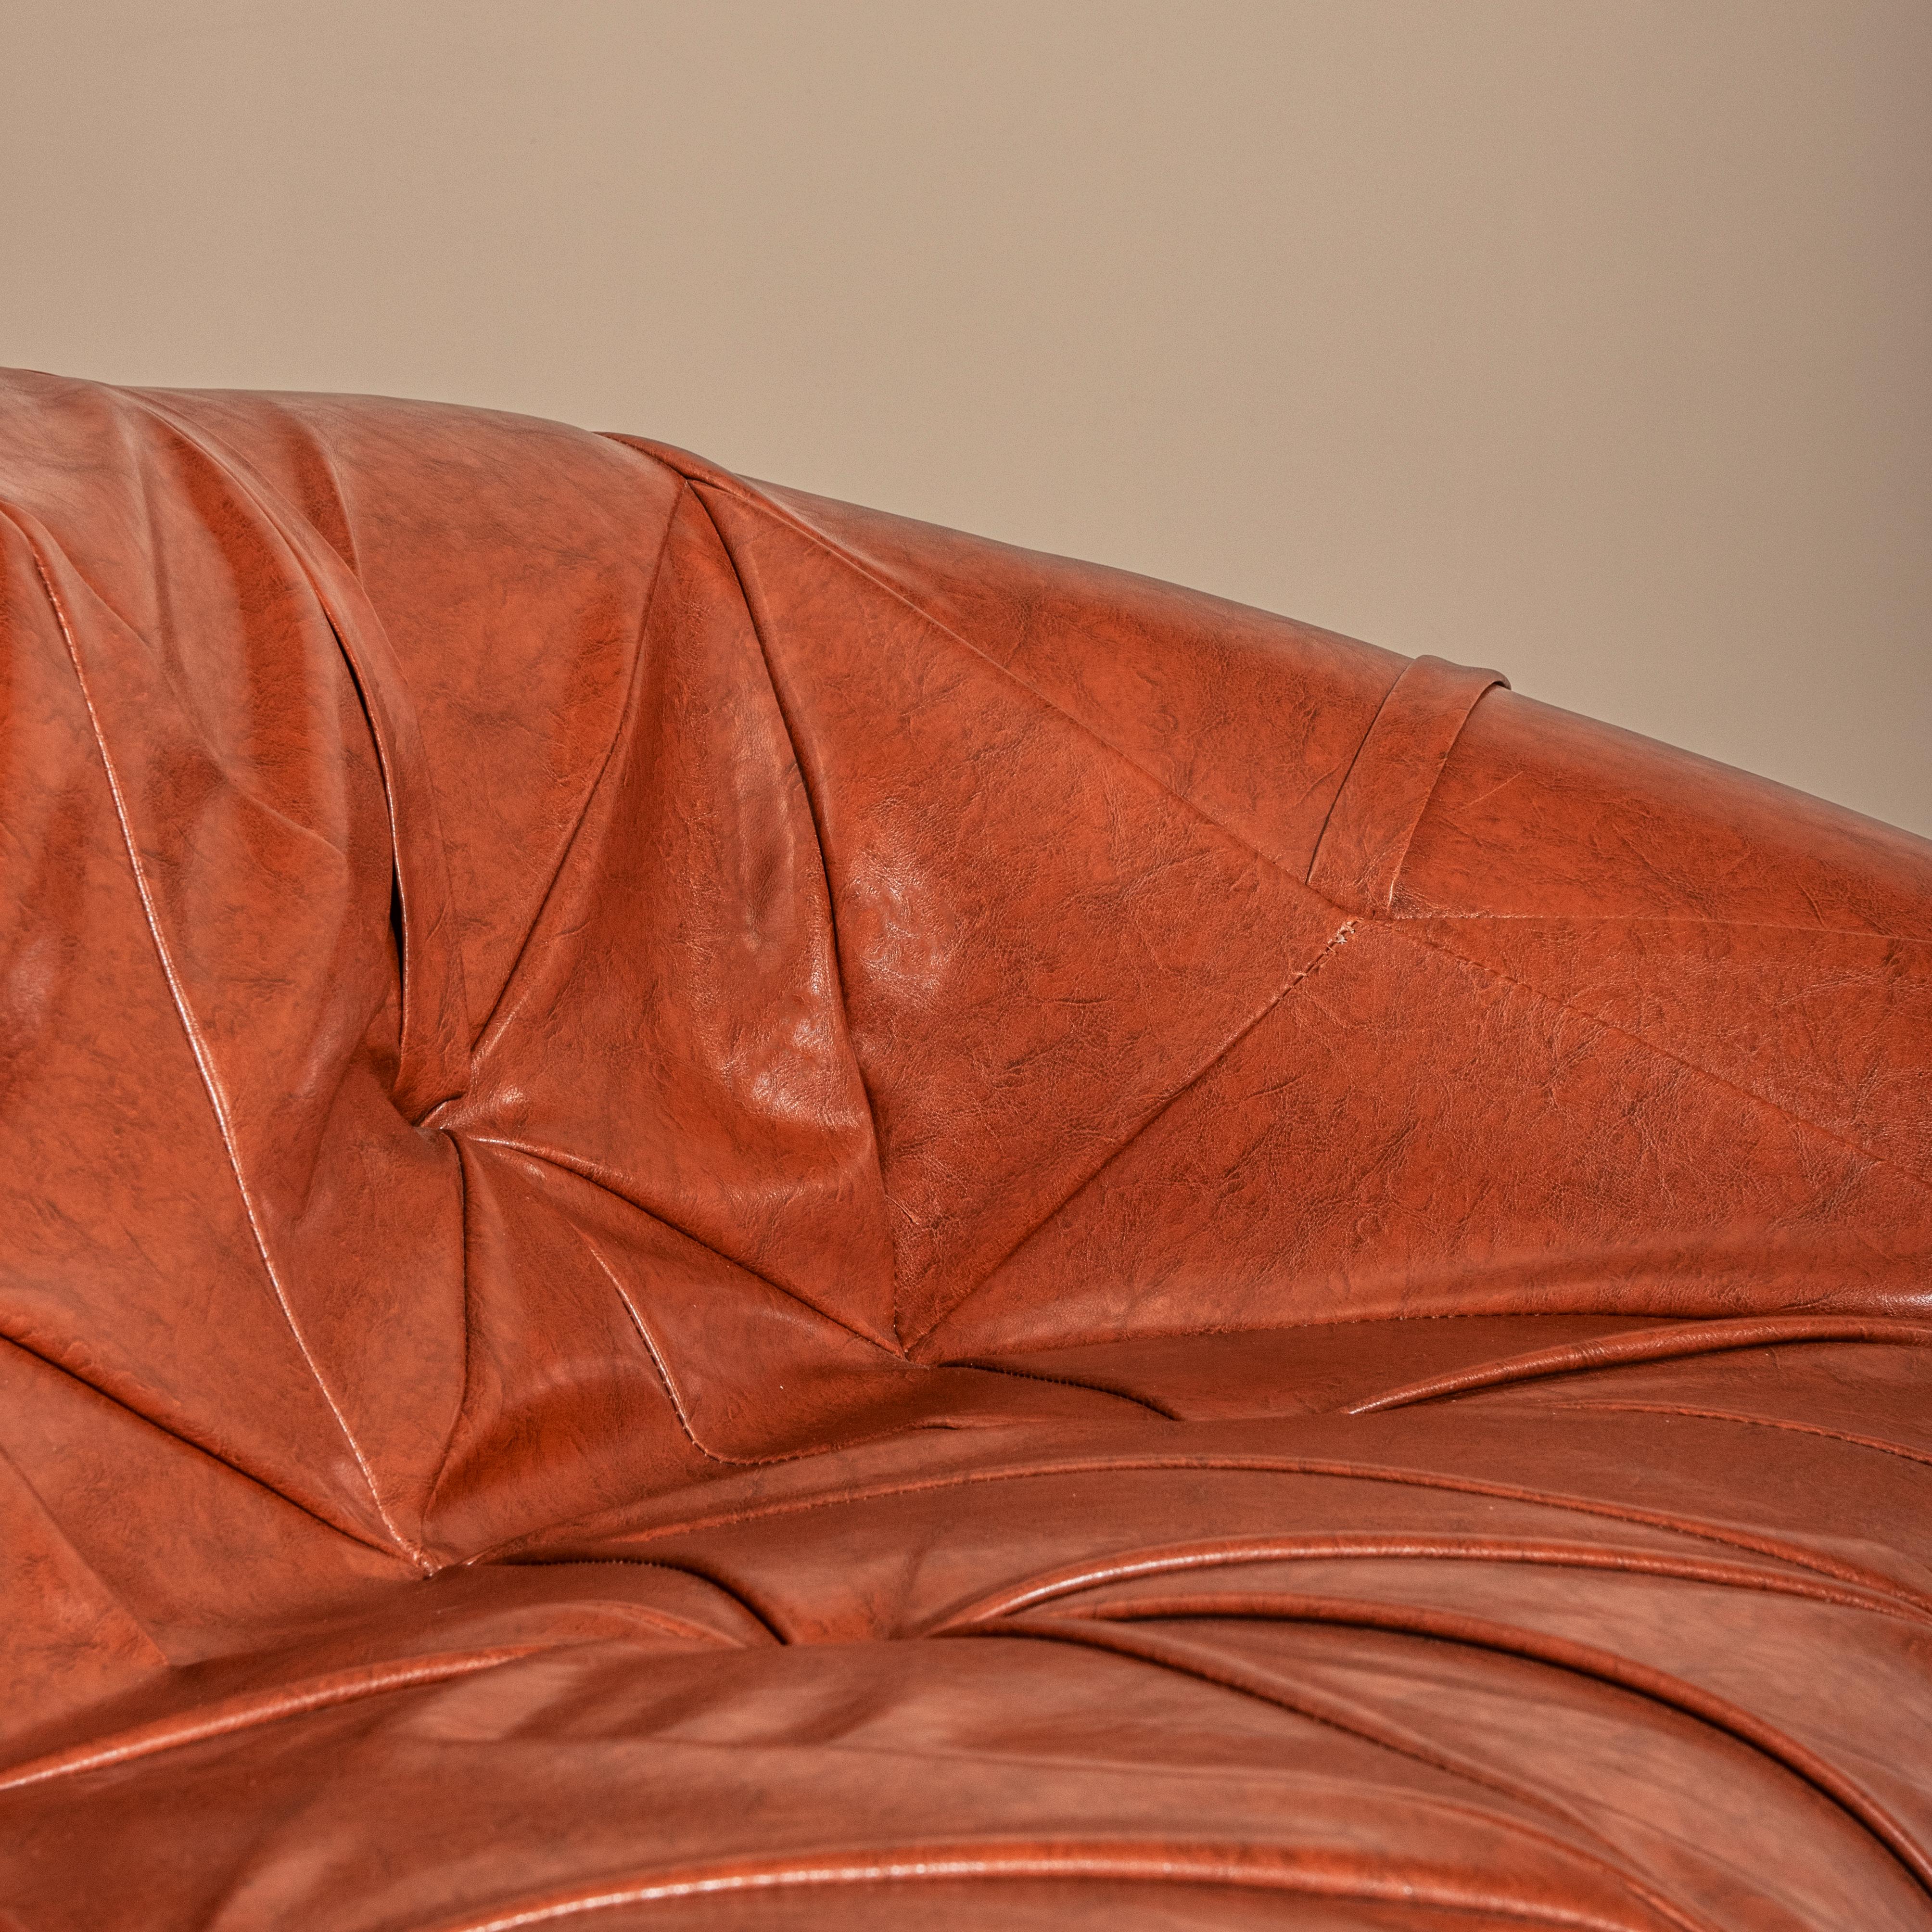 Entrez dans un univers de design et de sophistication intemporels avec le canapé MP-131, une création emblématique du célèbre designer brésilien Percival Lafer. Conçu dans les années 1960, ce chef-d'œuvre témoigne de l'ingéniosité et de l'innovation